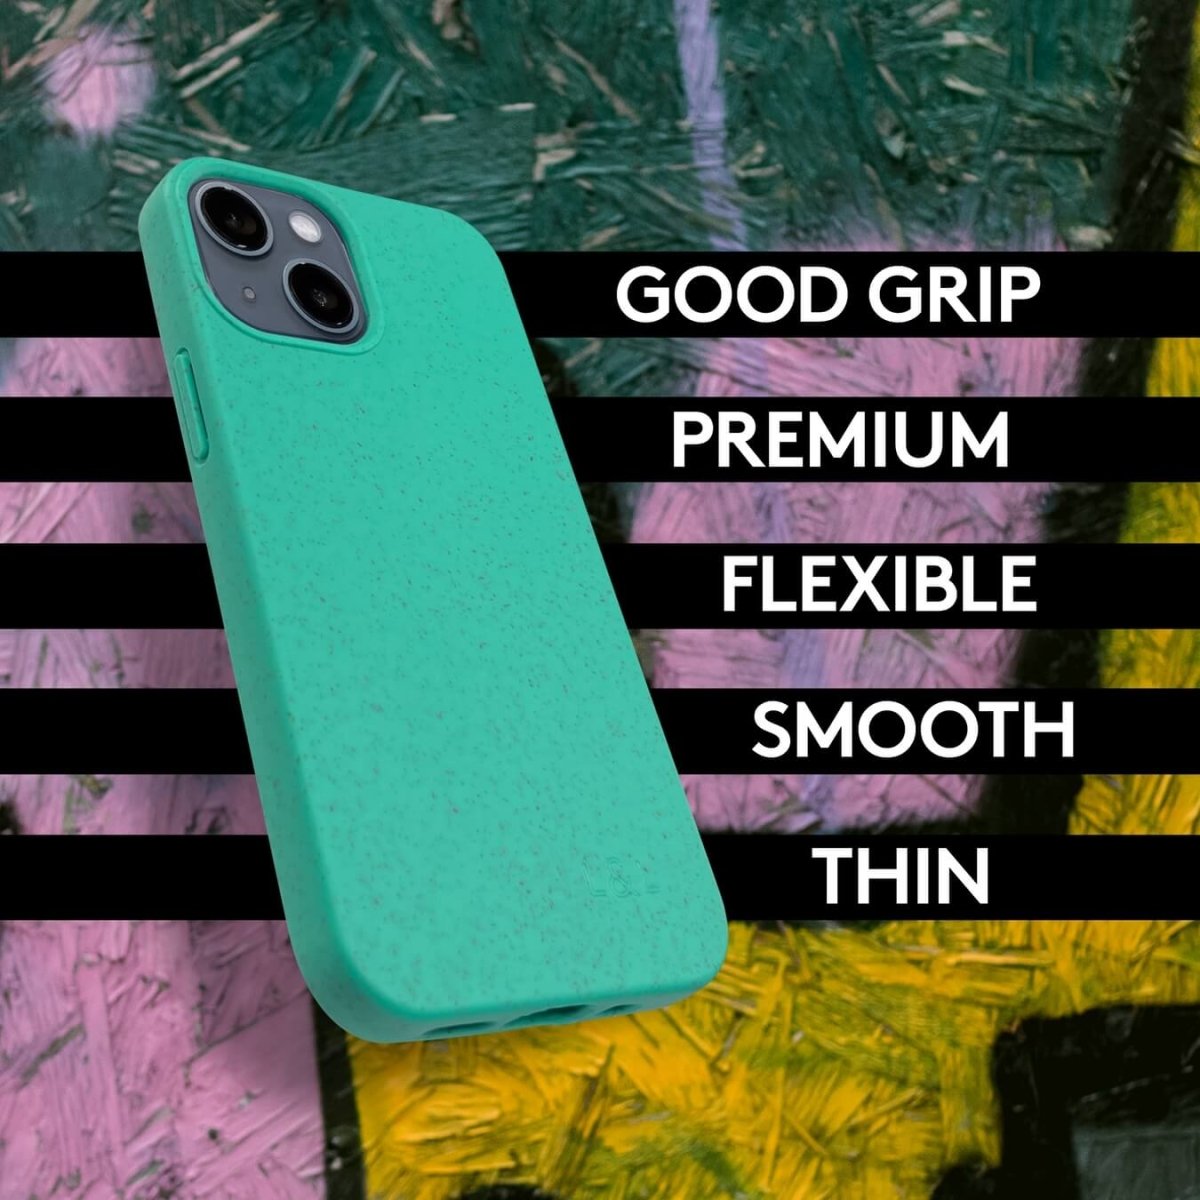 Biodegradable iPhone 13 Mini Case - Mint - Loam & Lore